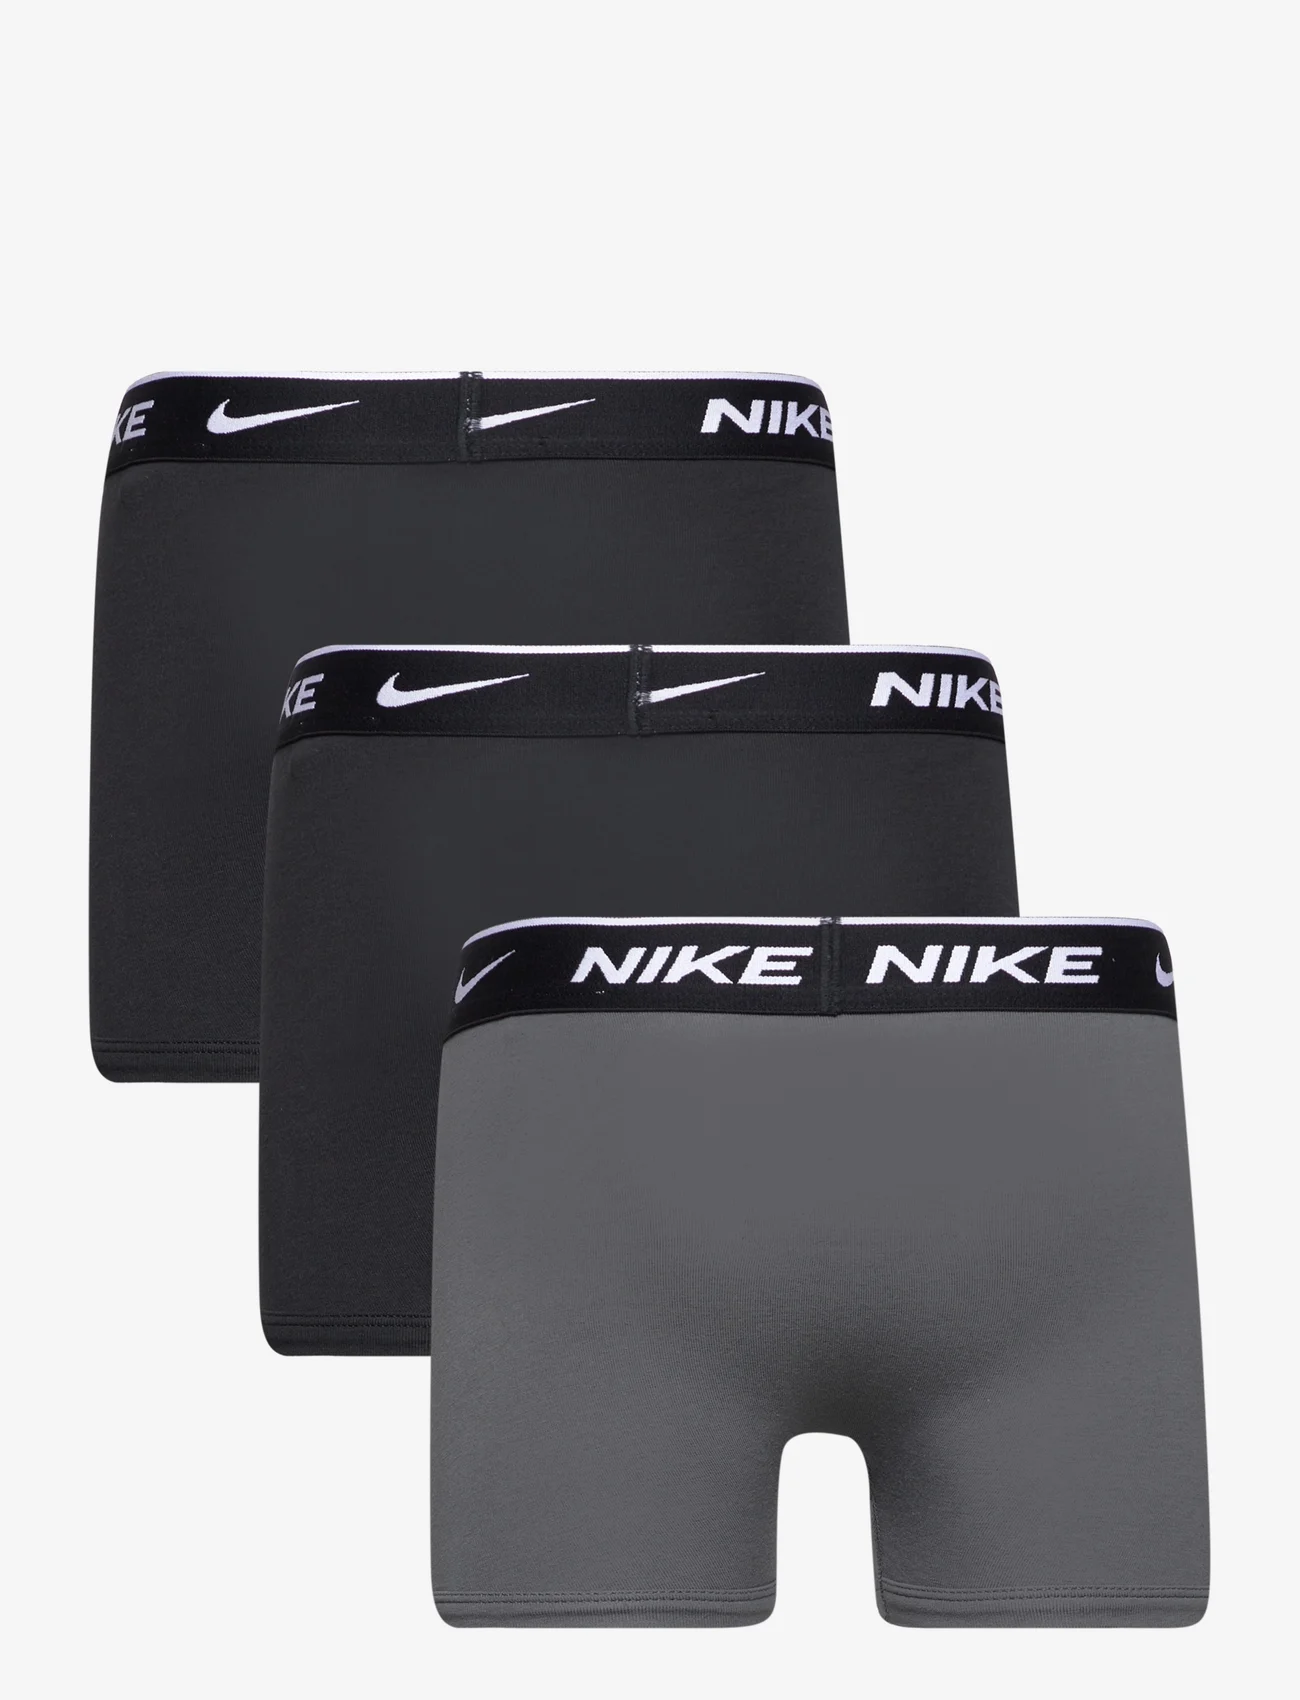 Nike - NHB NHB E DAY COTTON STRETCH 3 / NHB NHB E DAY COTTON STRETC - underpants - black / dk grey - 1